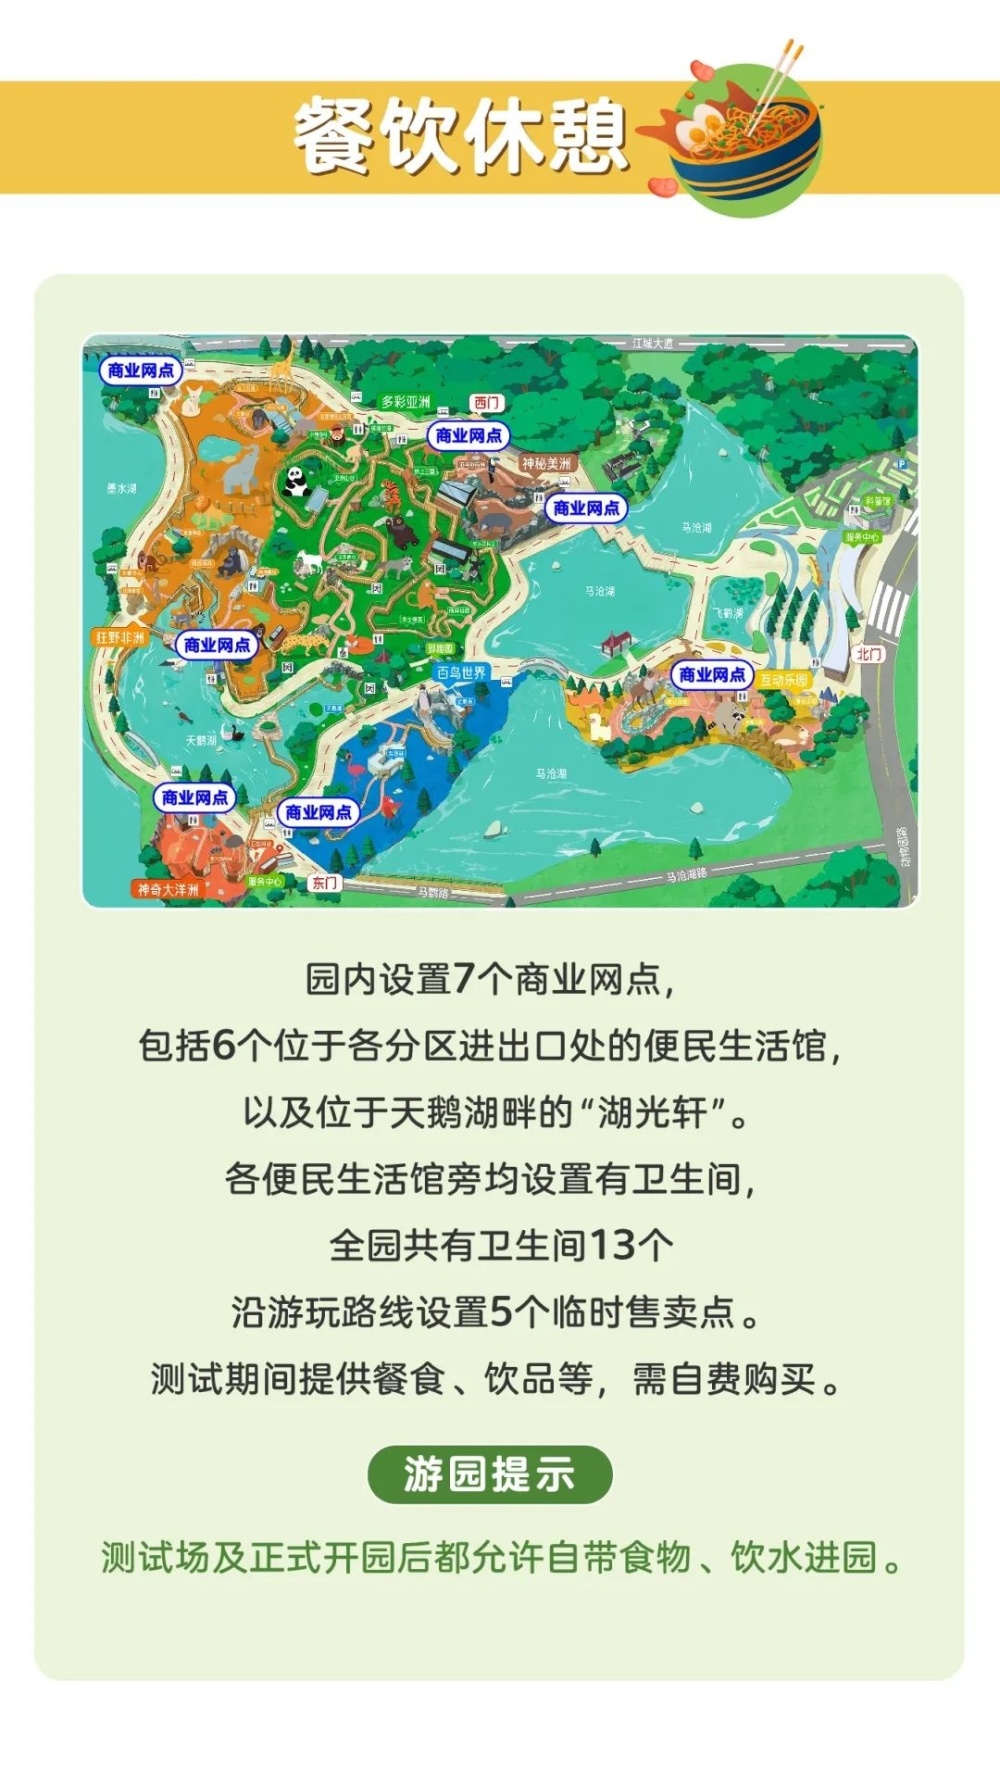 明早9点,武汉动物园3万张免费测试票来了!